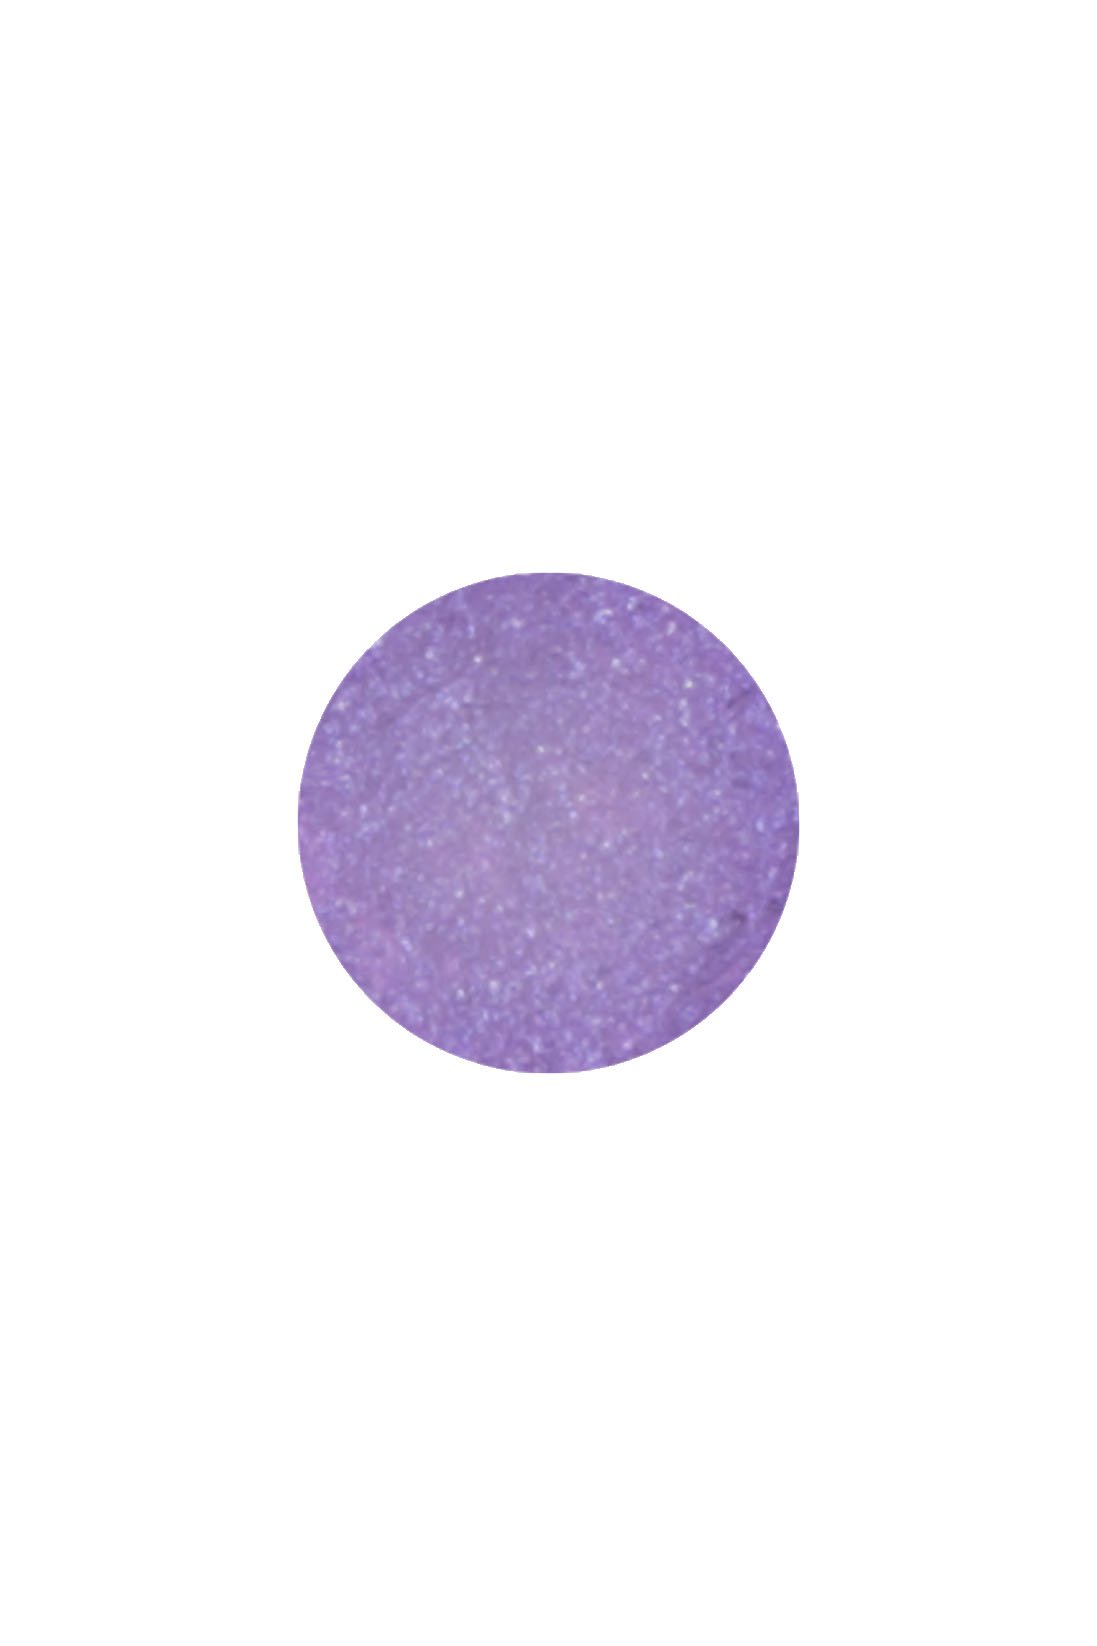  Dot of Lasting FAIRY PURPLE Color Eyeliner (Waterproof)